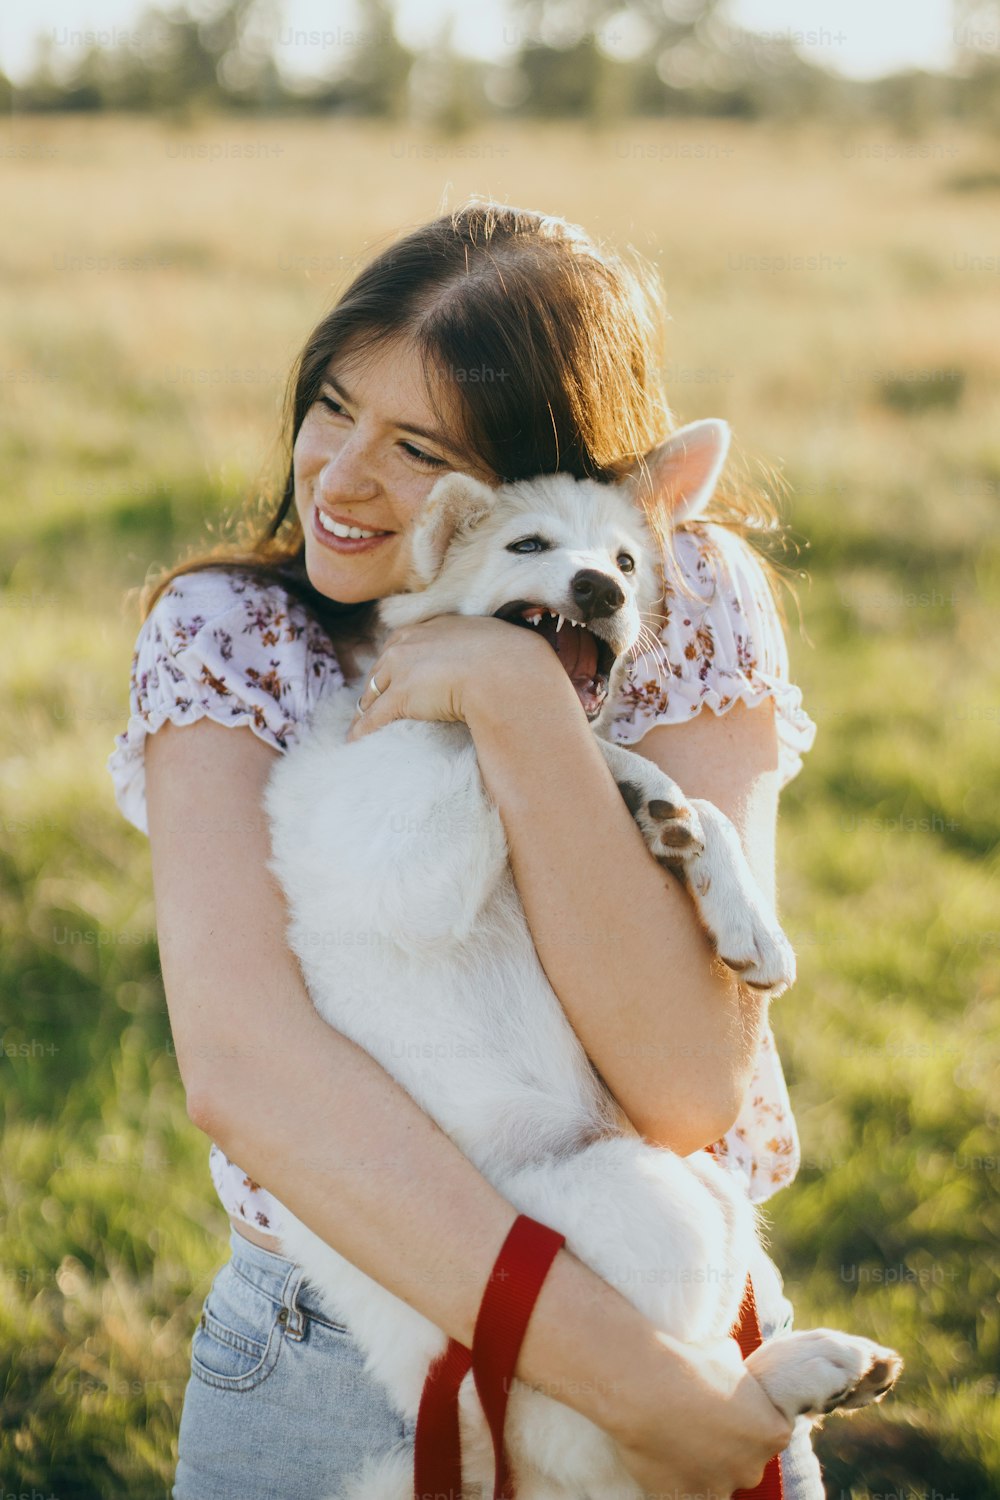 Giovane donna elegante che abbraccia un cucciolo bianco carino nella calda luce del tramonto nel prato estivo. Ragazza felice che tiene il cucciolo soffice giocoso. Bellissimo momento divertente. Concetto di adozione